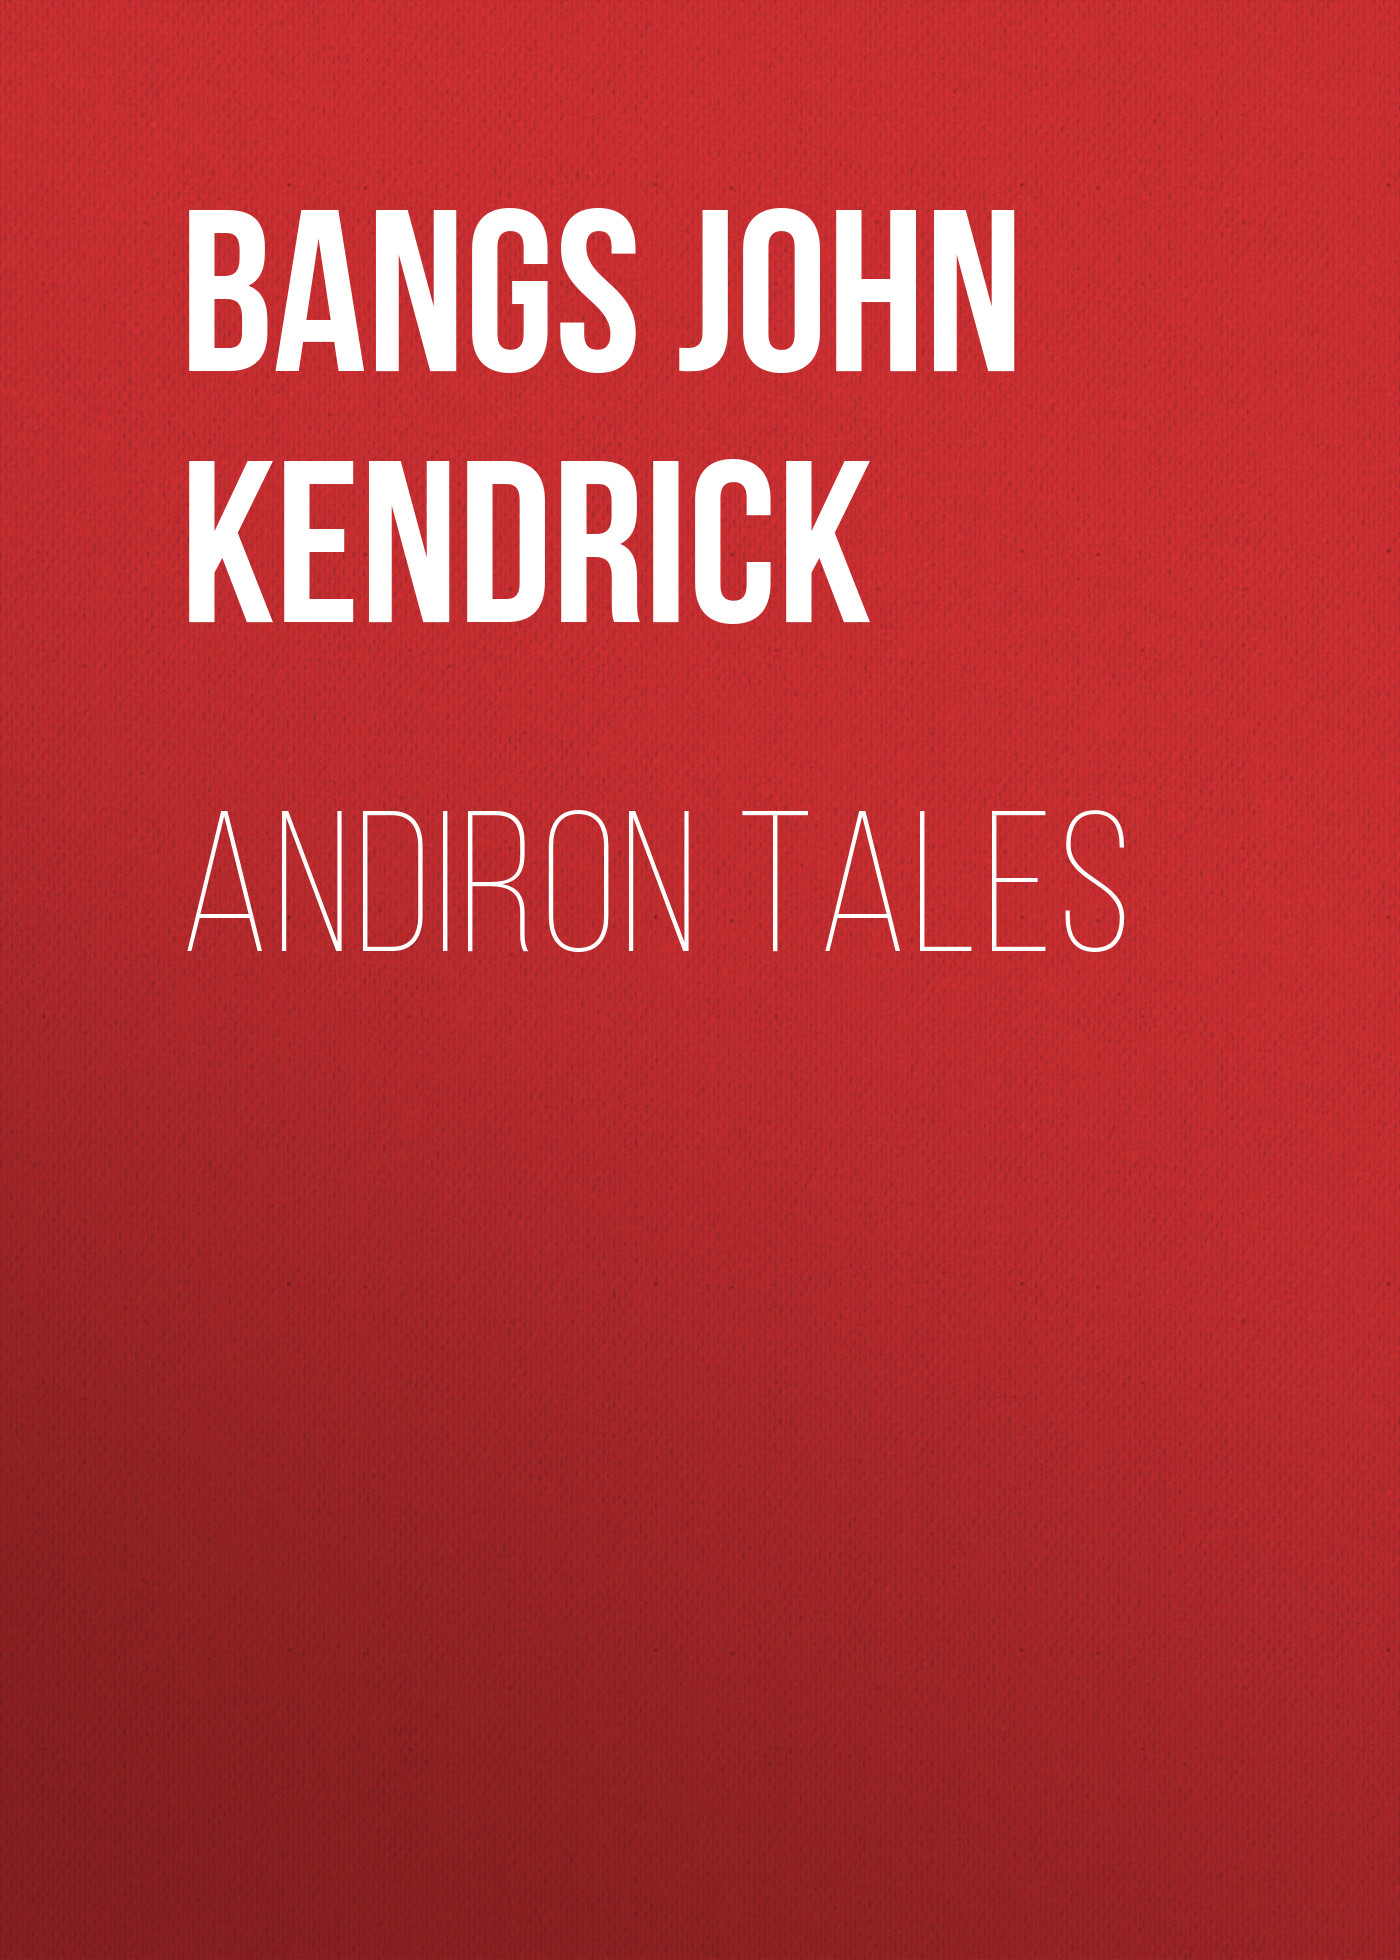 Книга Andiron Tales из серии , созданная John Bangs, может относится к жанру Зарубежные детские книги, Зарубежная старинная литература, Зарубежная классика. Стоимость электронной книги Andiron Tales с идентификатором 36366758 составляет 0 руб.